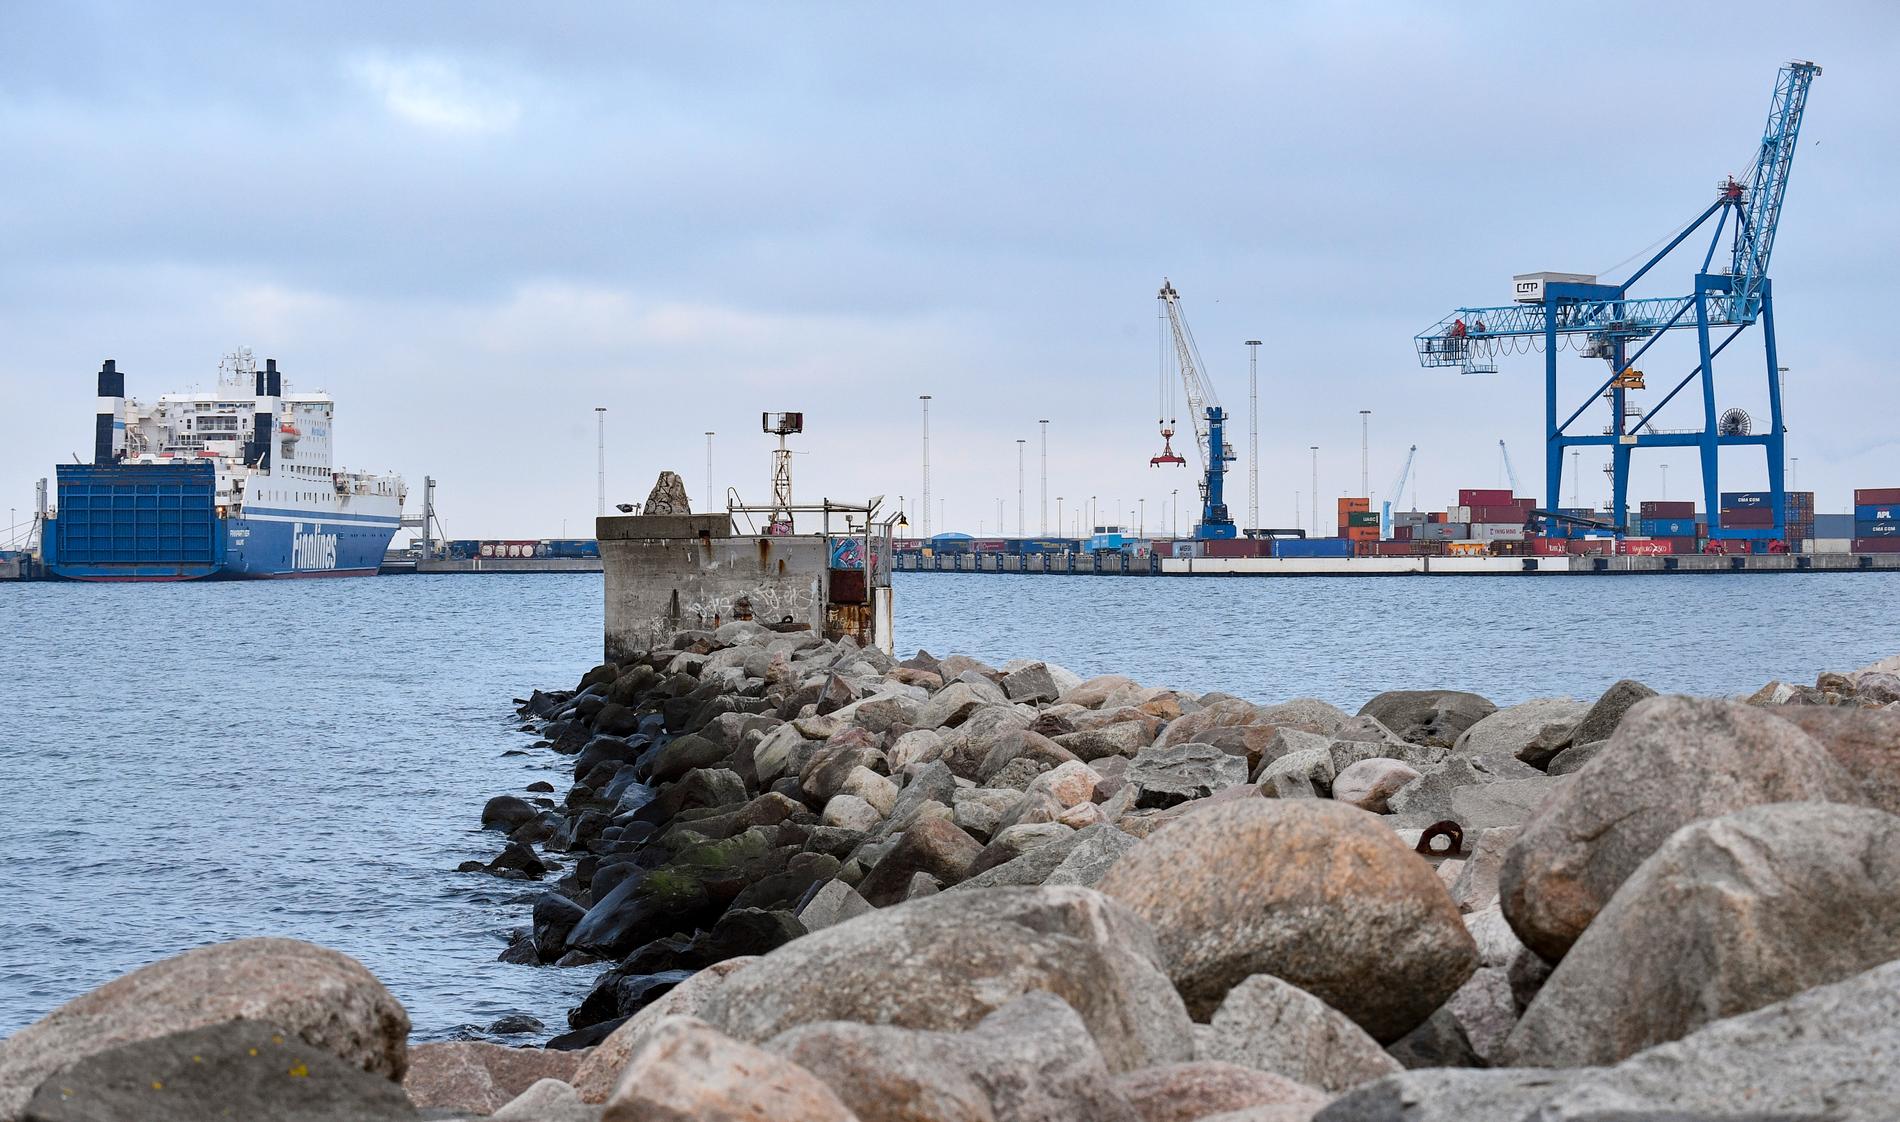 En lastbilschaufför åtalas för att ha smugglat in 118 kilo narkotika. Mannen ankom till norra hamnen i Malmö med en färja från Travemünde. Arkivbild.